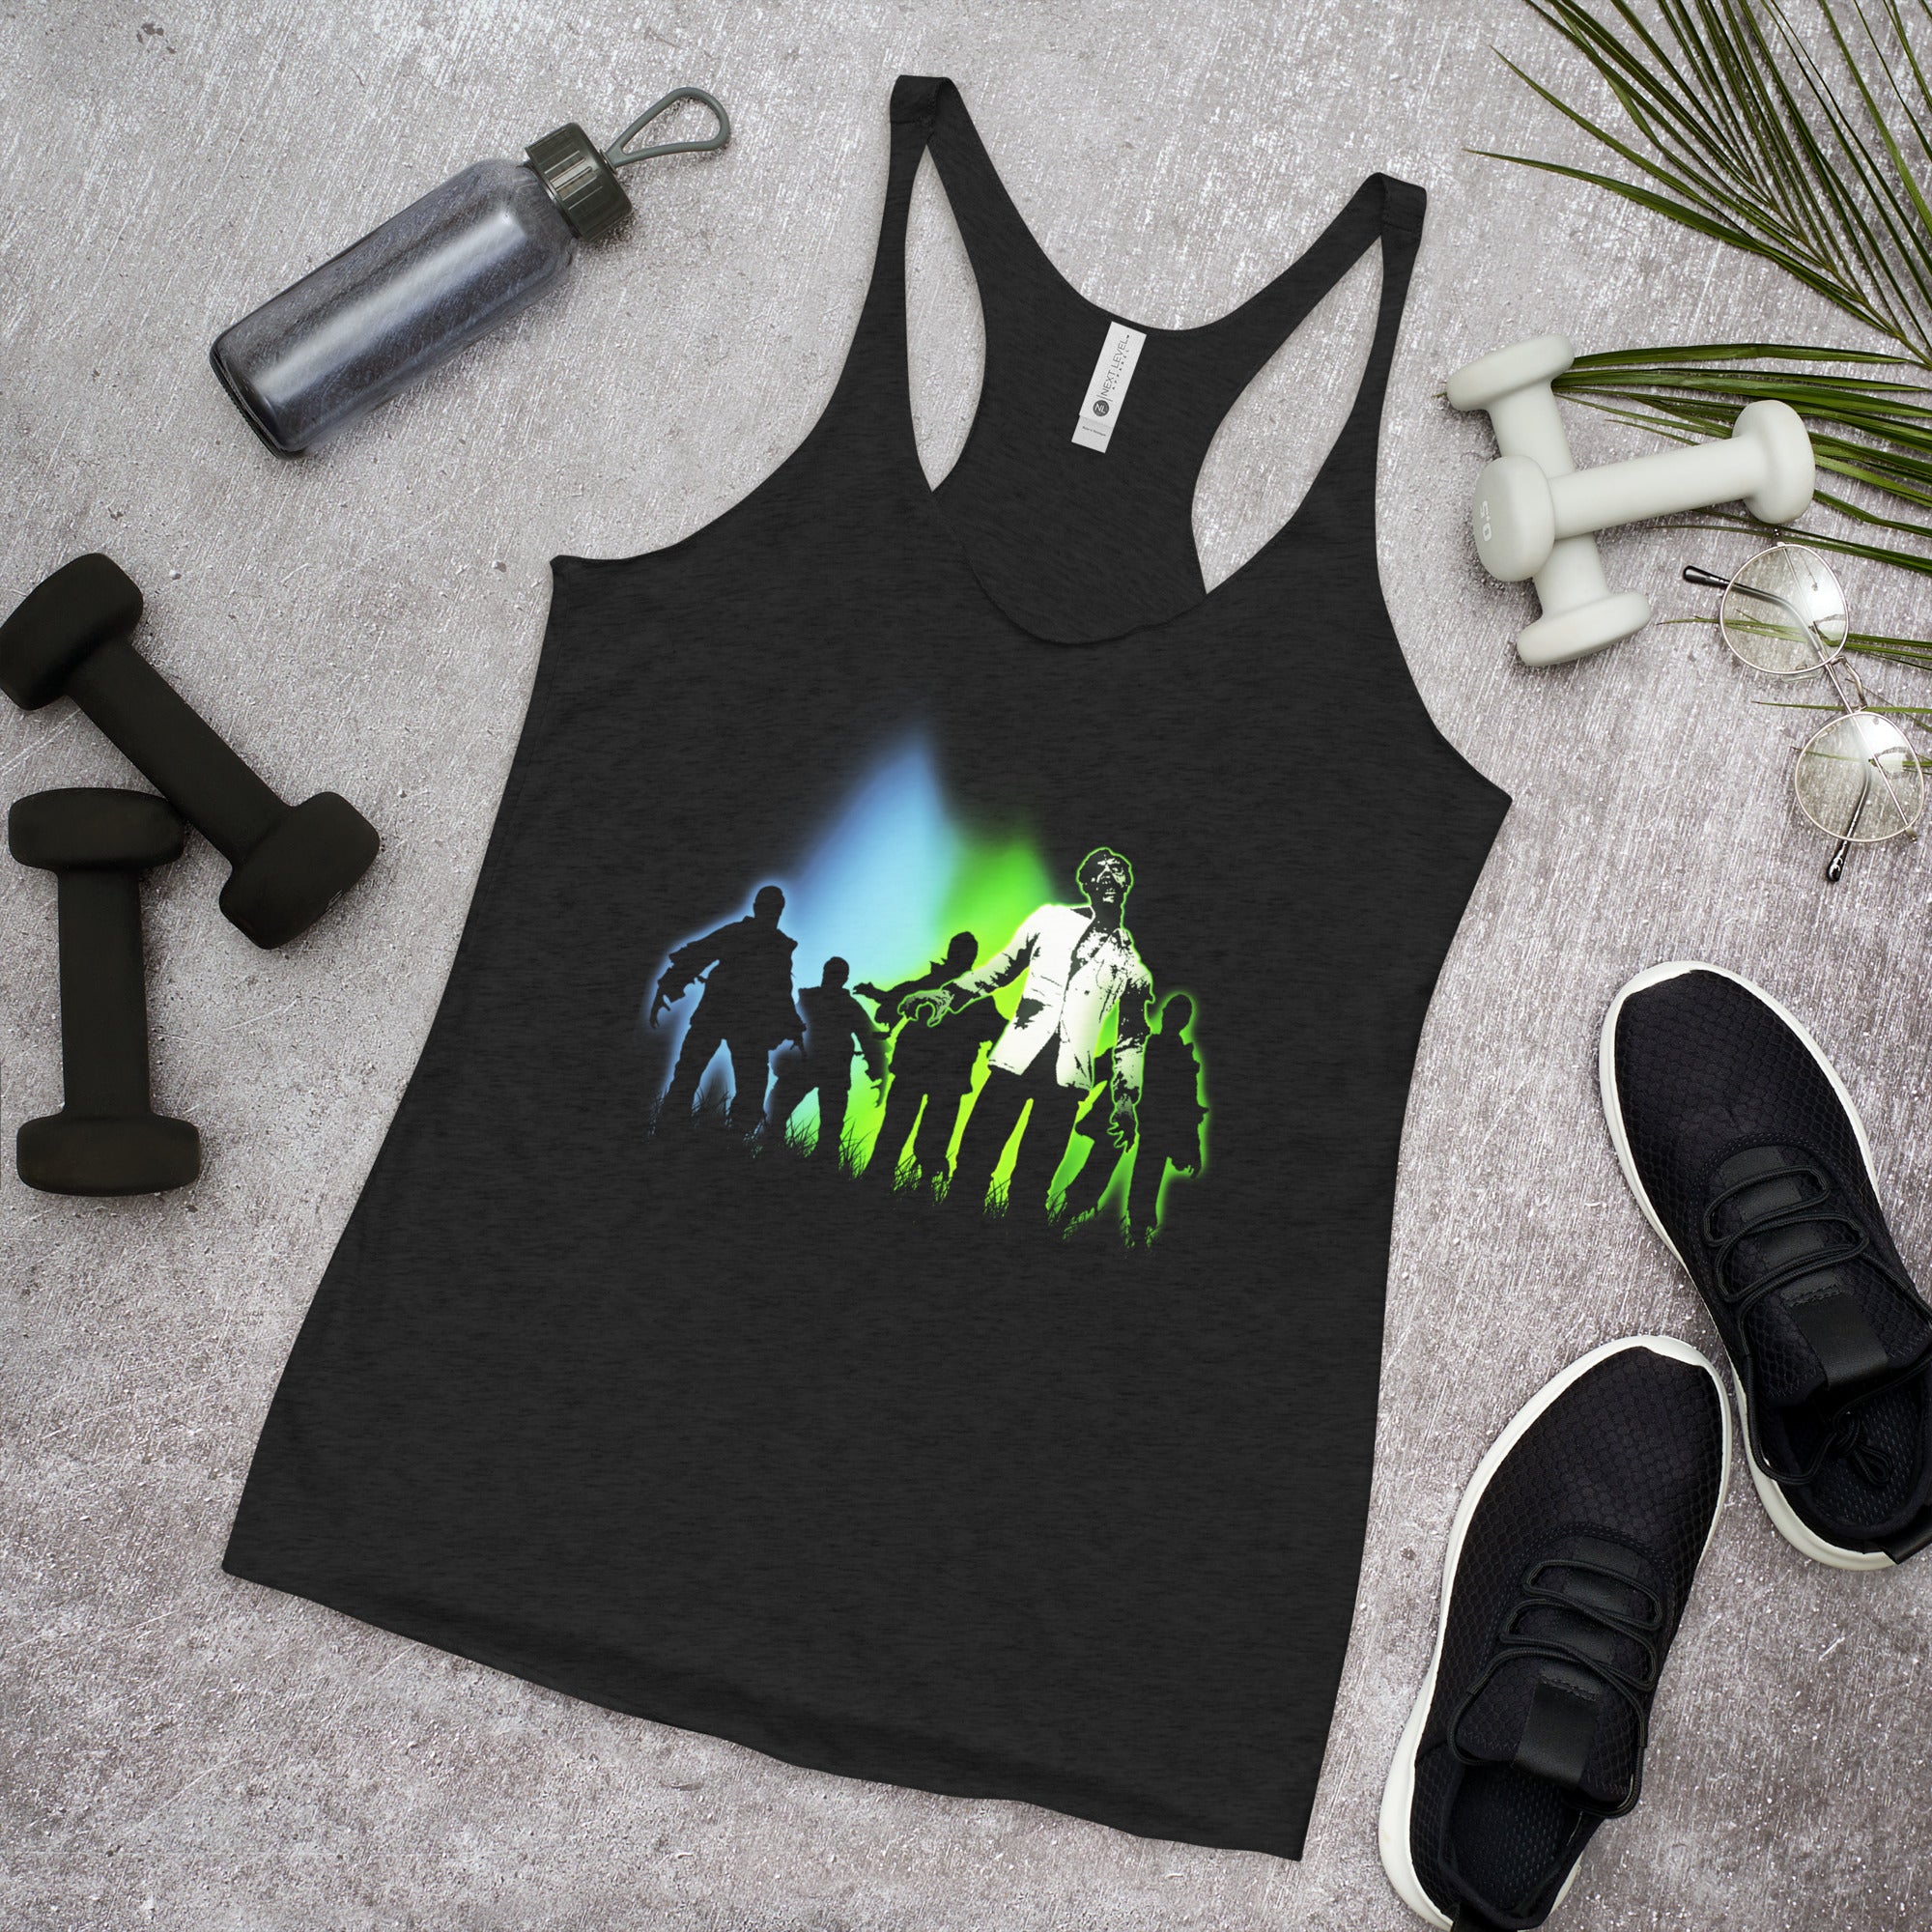 Radioactive Walking Dead Zombie Horde Women's Racerback Tank Top Shirt - Edge of Life Designs